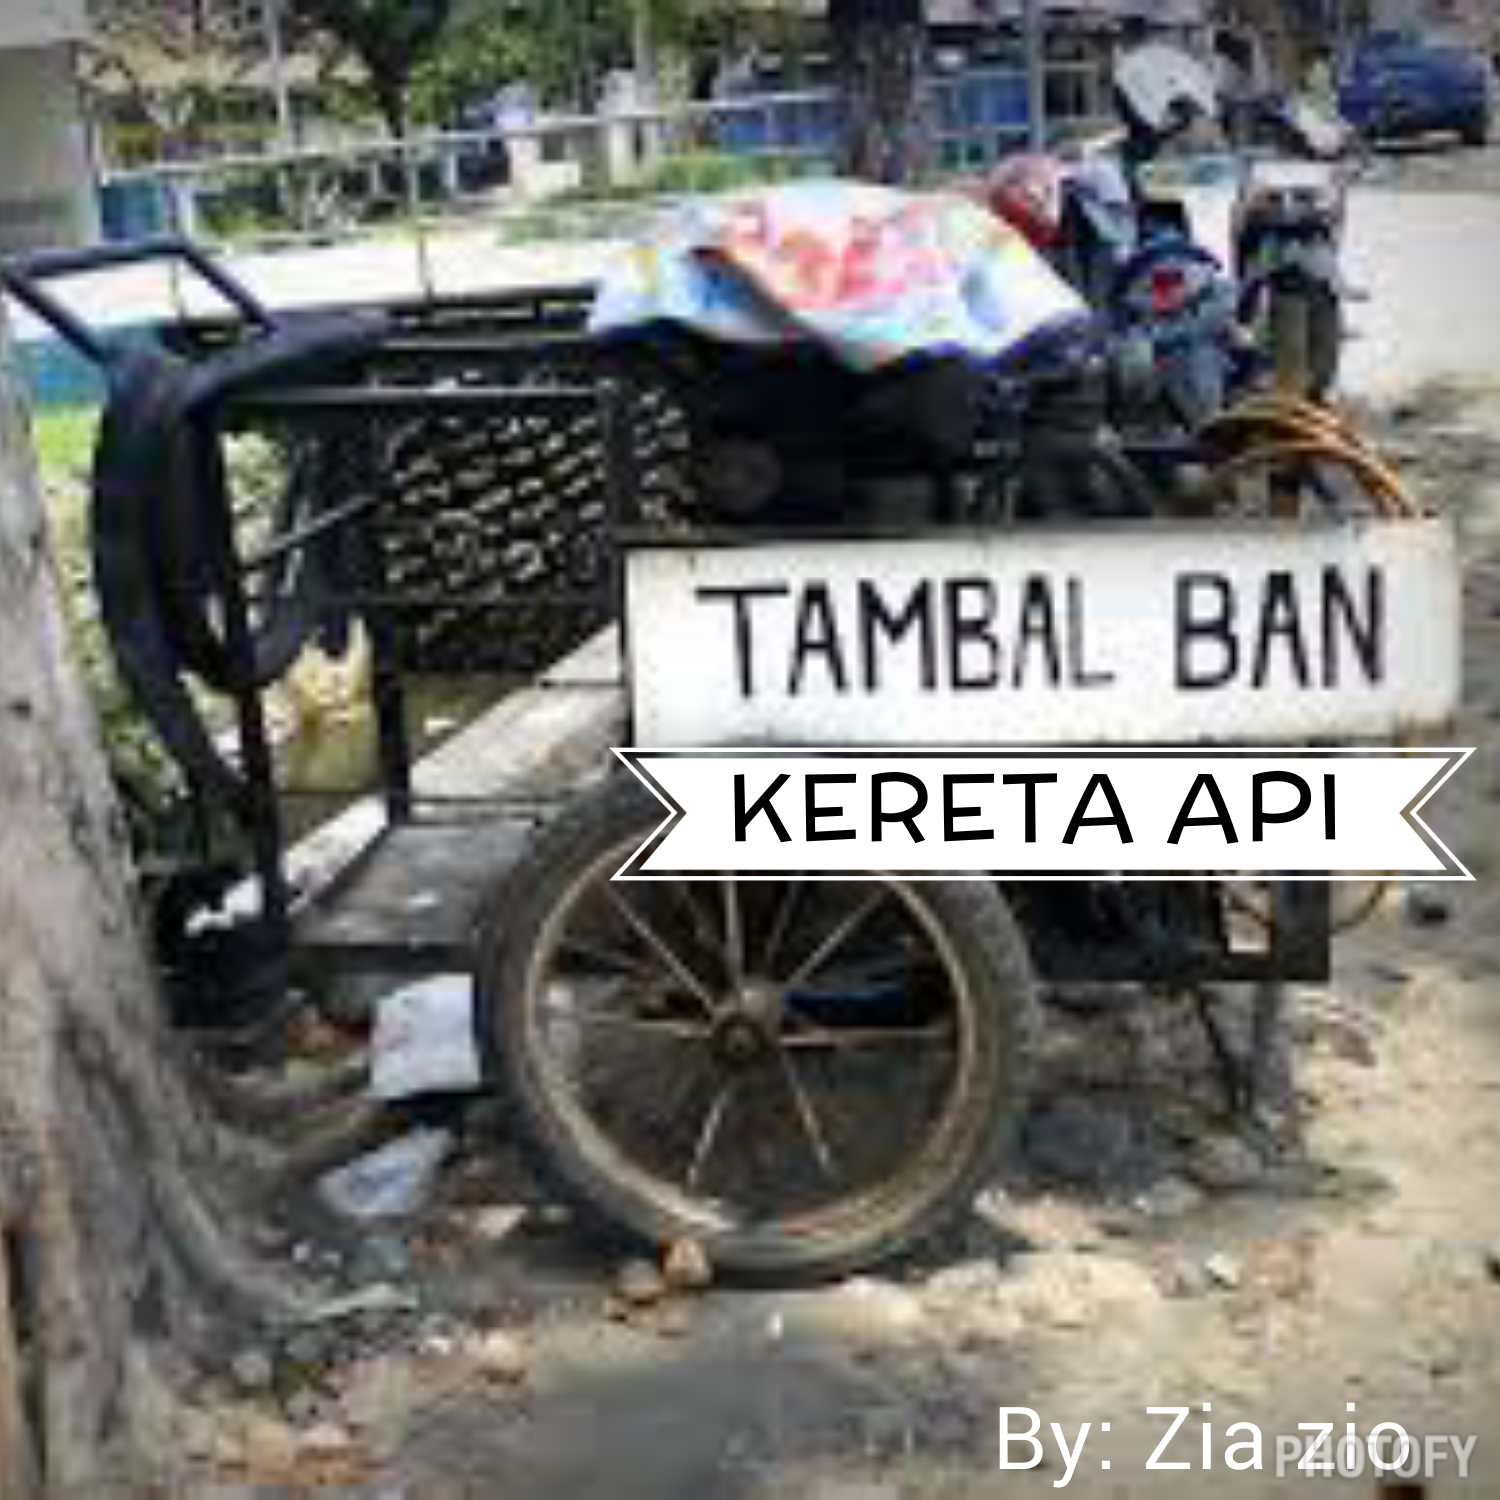 Wallpaper Lucu Gokil Terbaru 2015 Part 1 RUMAHGOKILcom